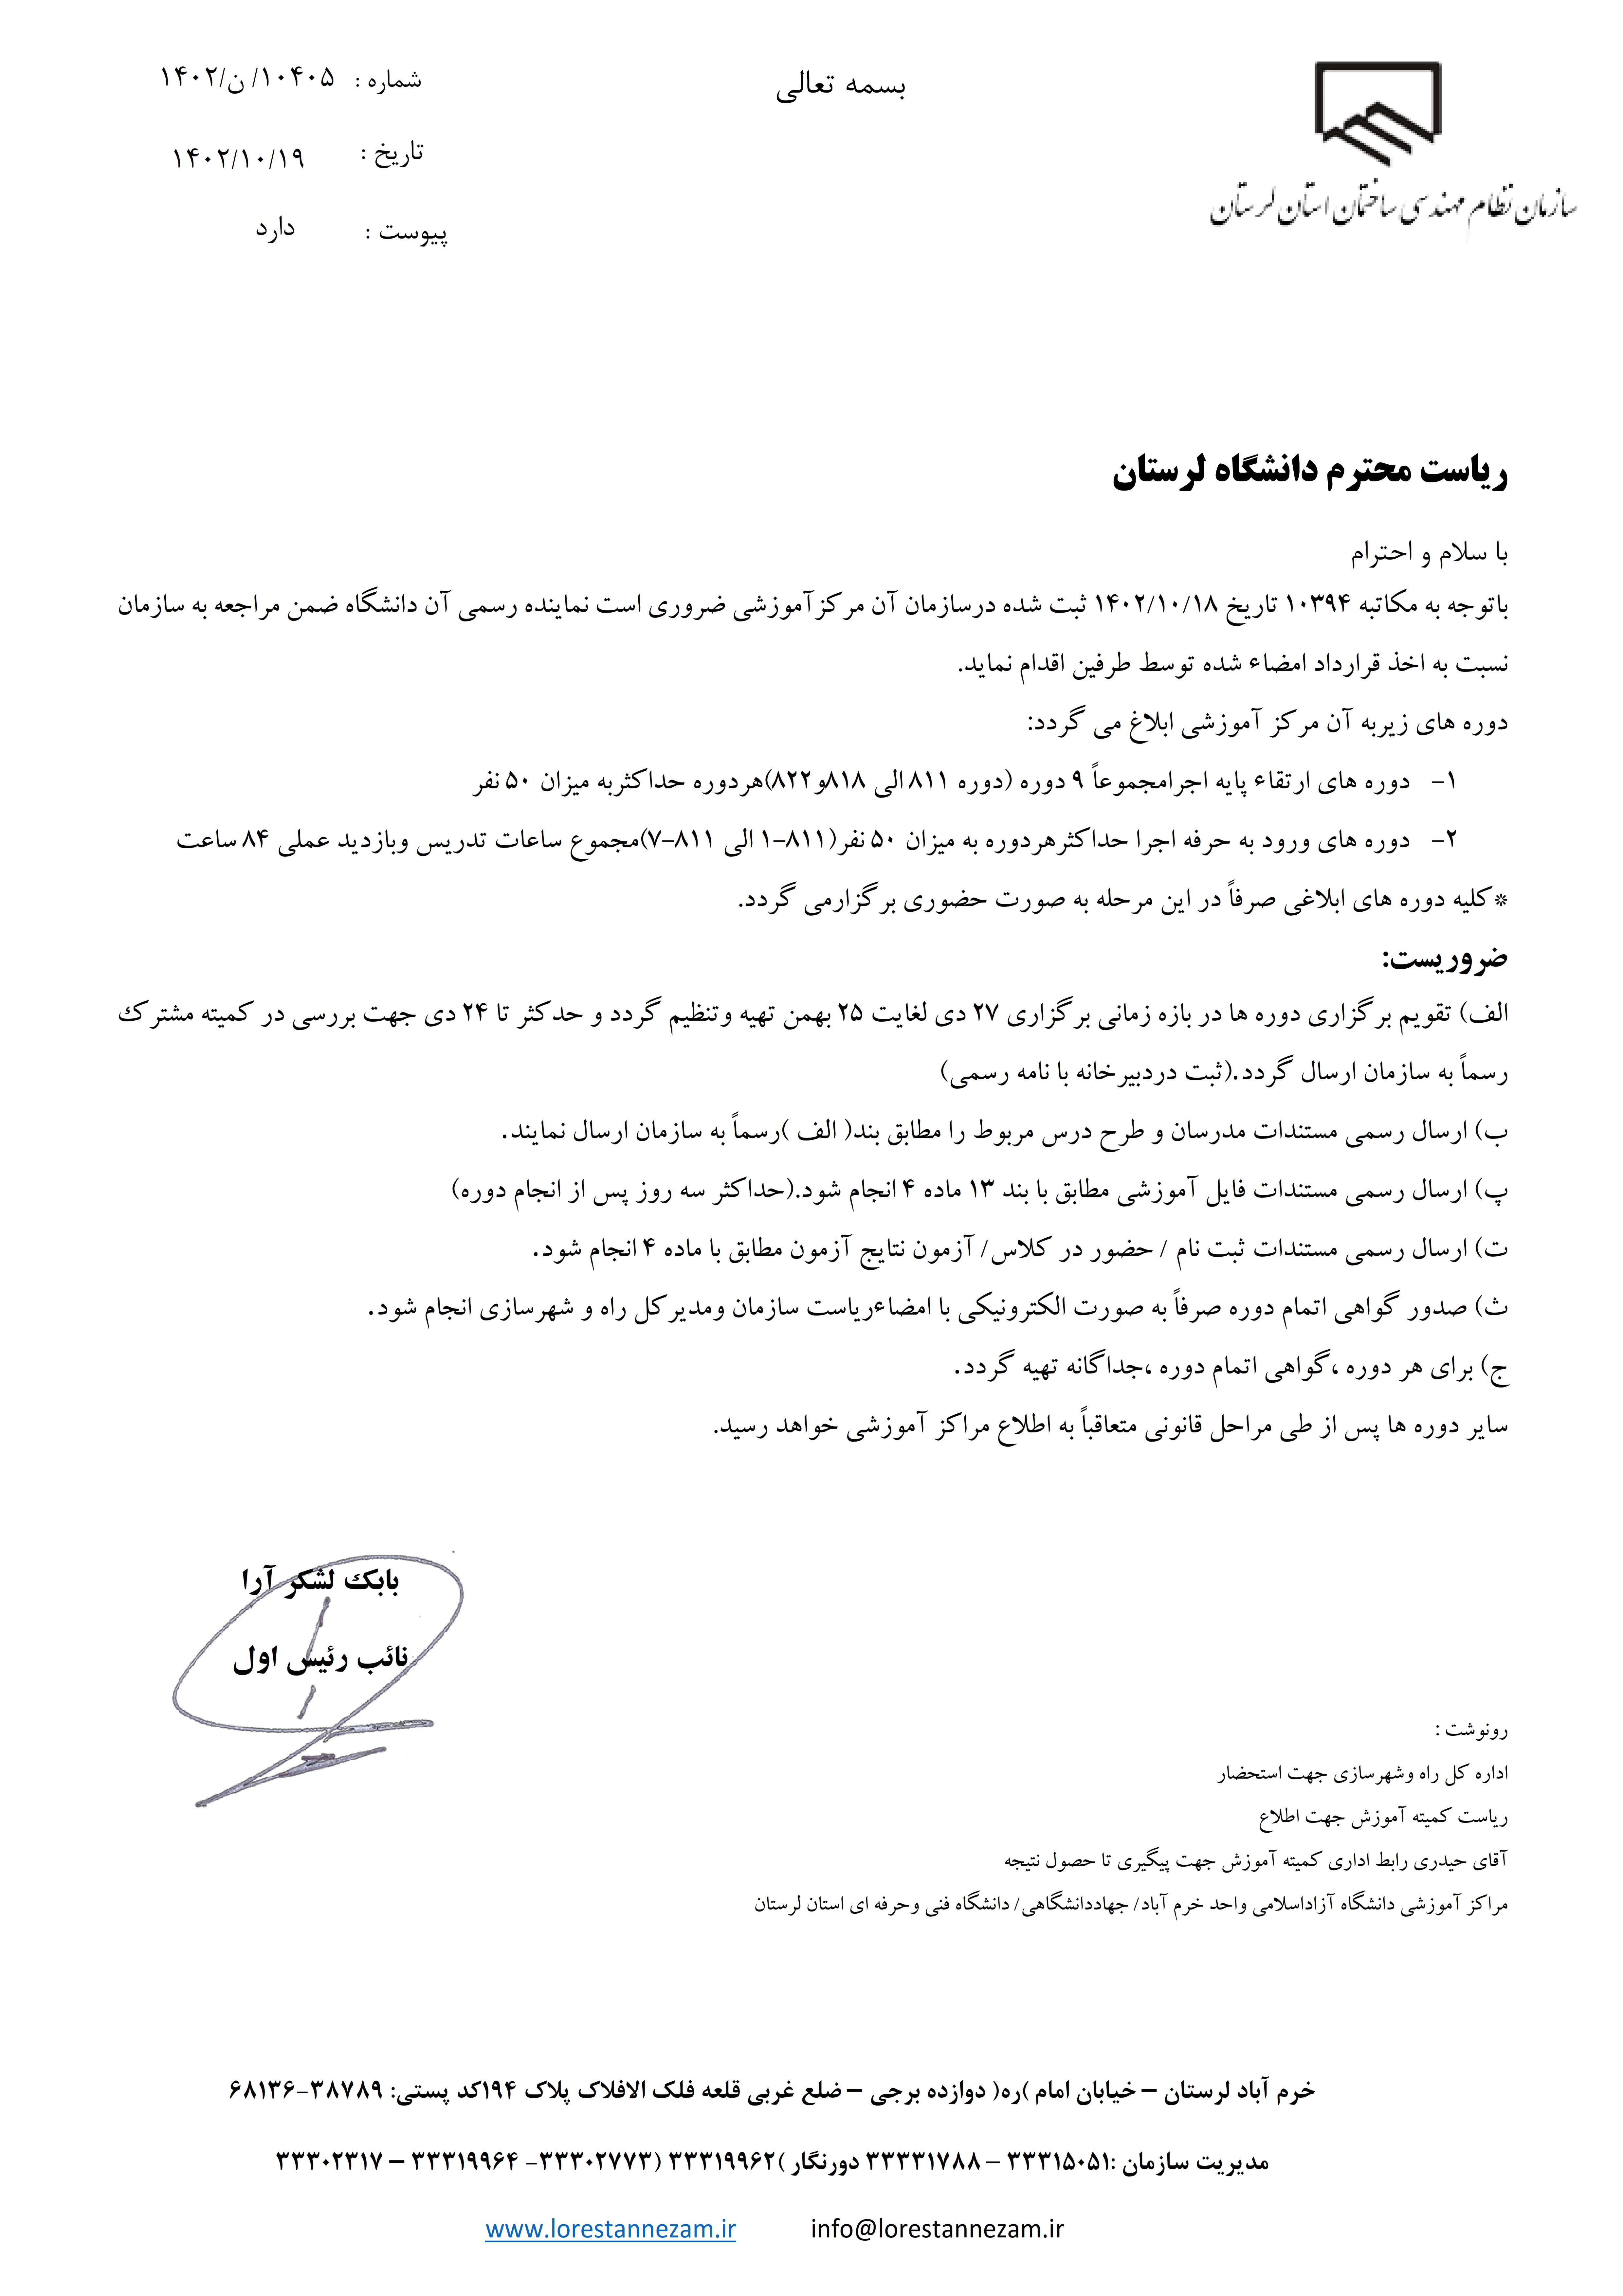 مکاتبه رسمی سازمان استان جهت اعلام دوره های آموزشی به دانشگاه لرستان